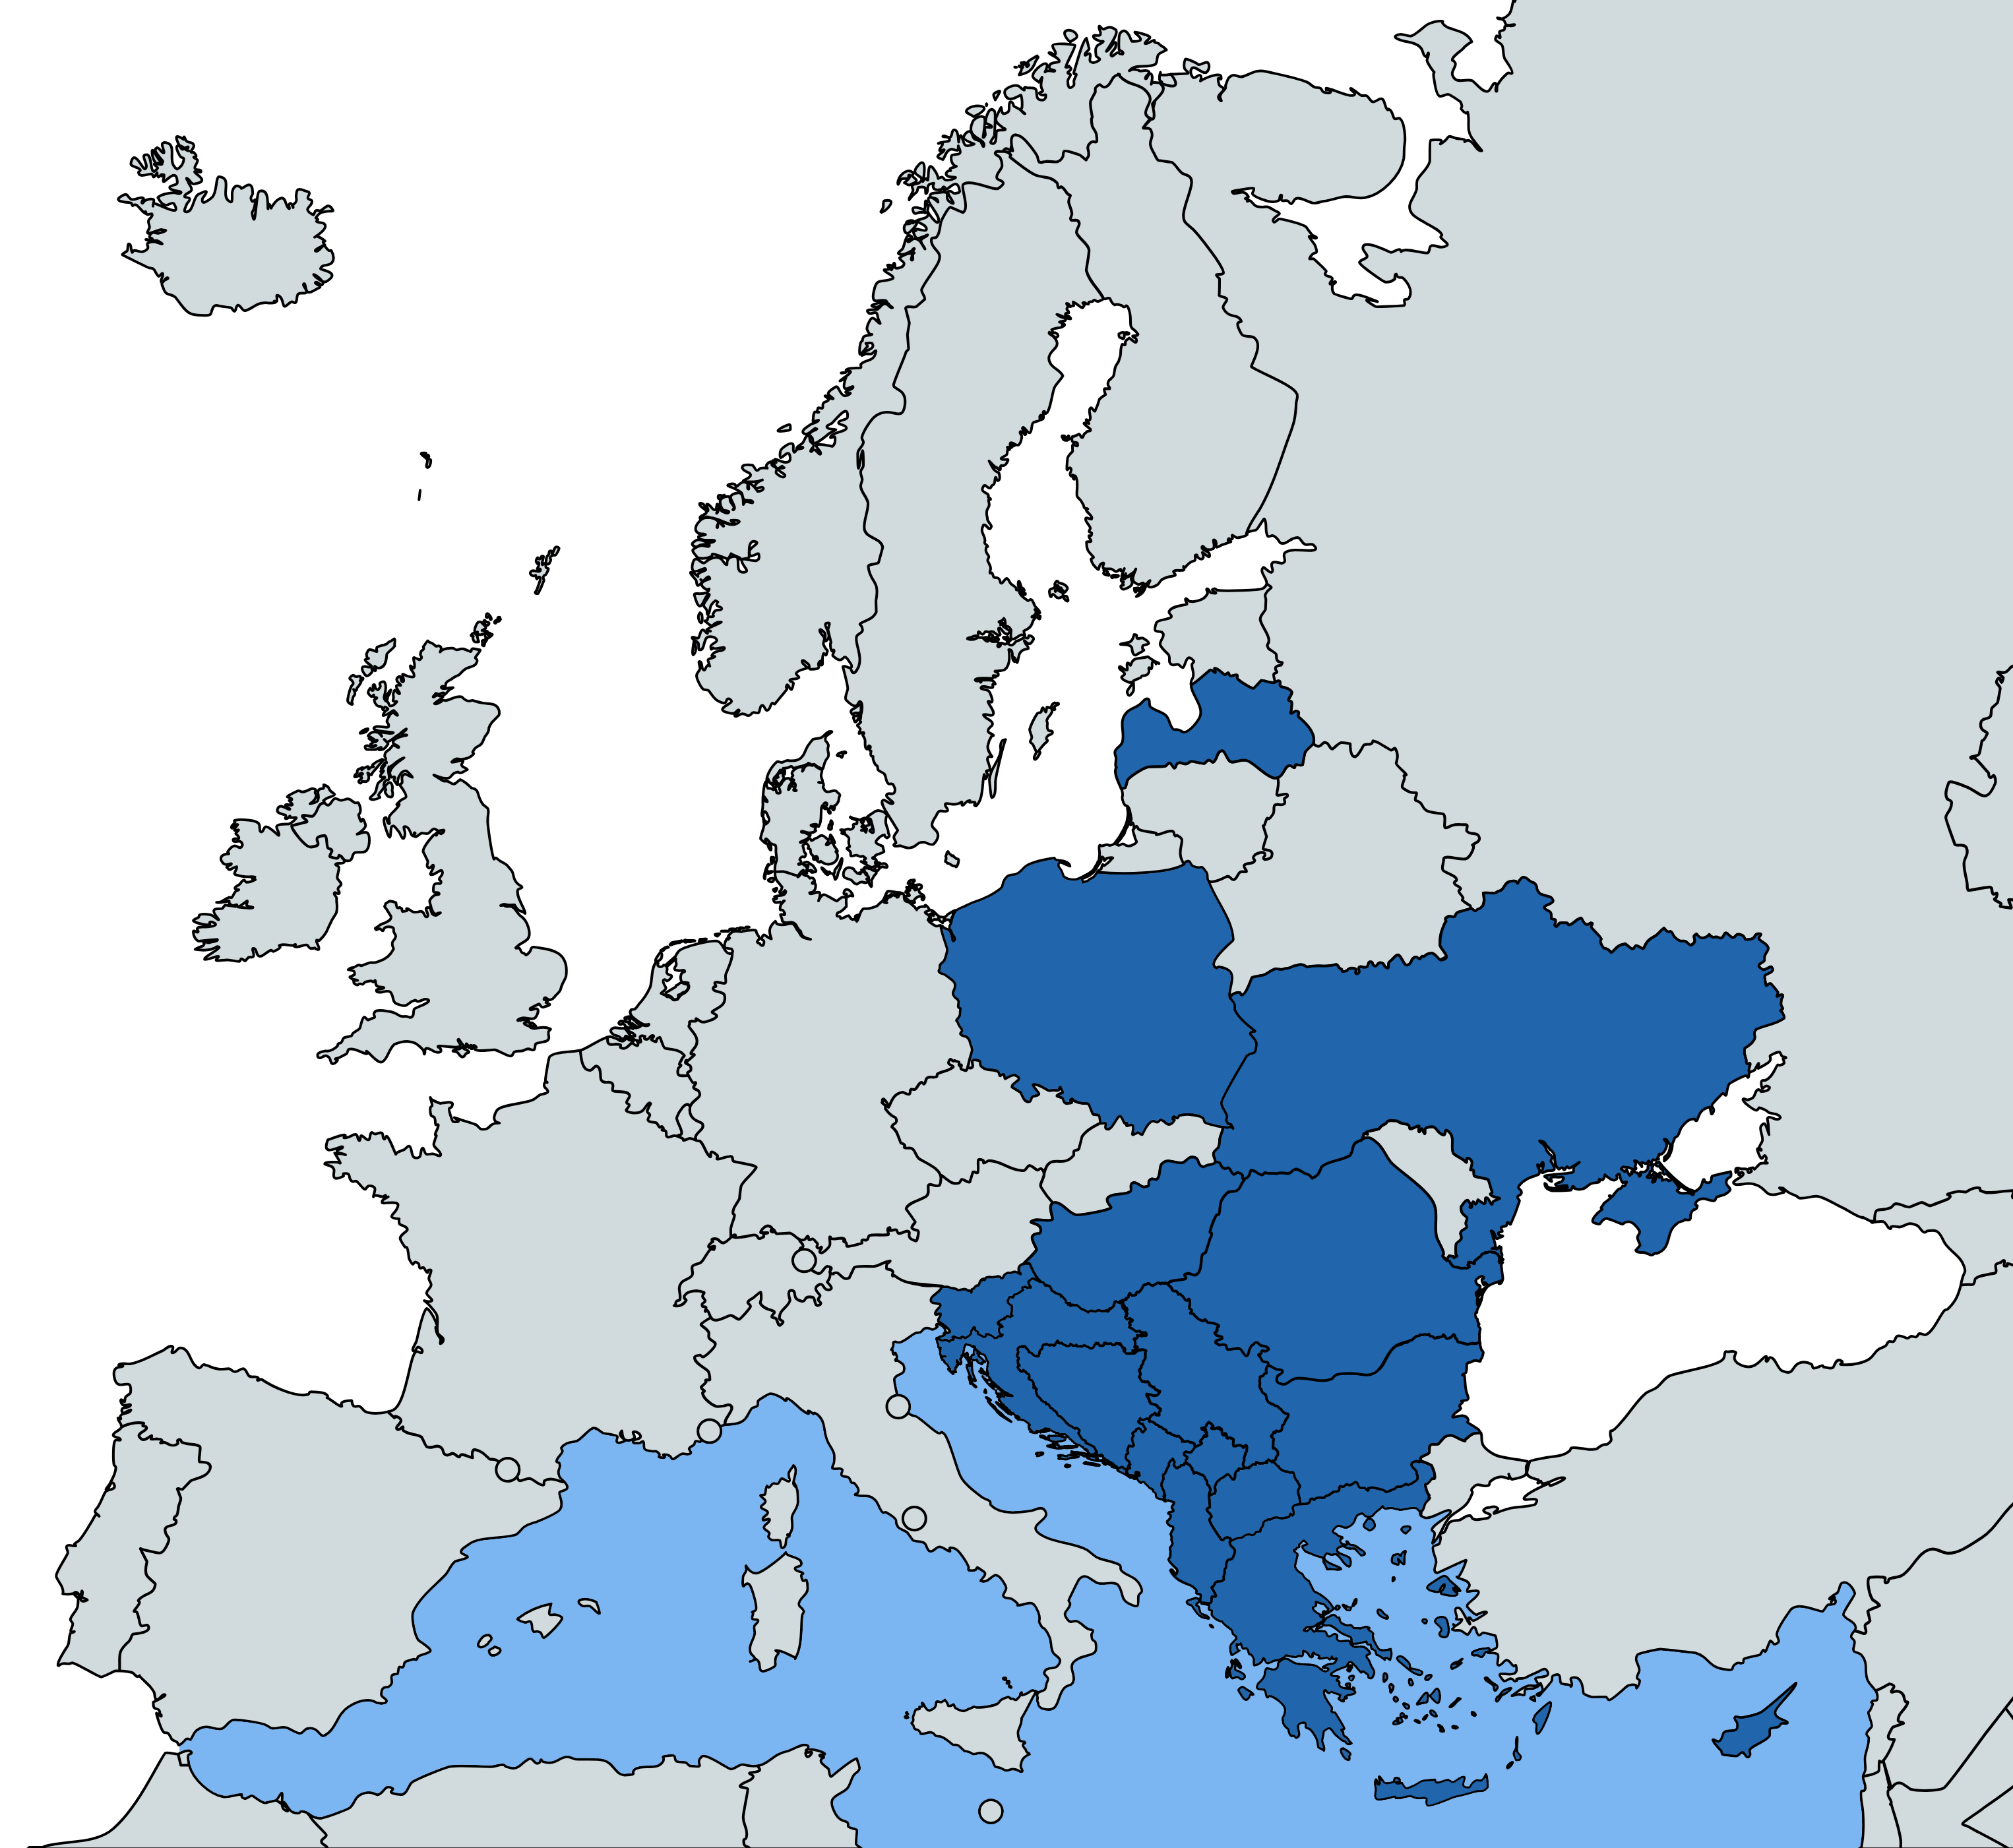 In blu i Paesi europei dove l'Italia è impegnata in operazioni militare (non solo con la presenza sul terreno). In colore più chiaro le aree di operazioni navali.